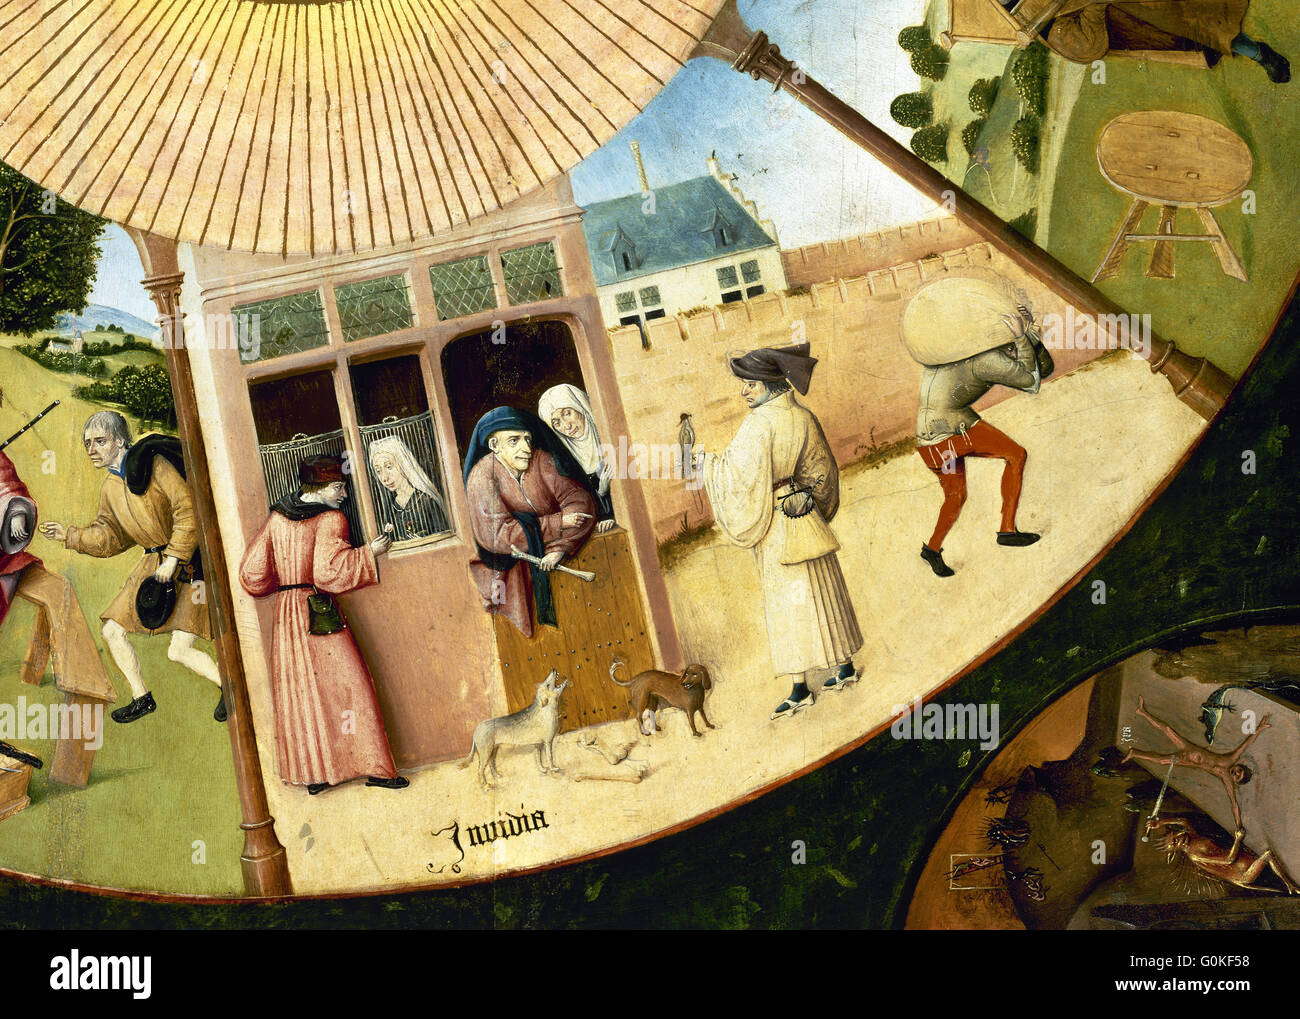 Jérôme Bosch (c.1450-1516). Peintre hollandais. Le tableau des sept péchés capitaux. Détail de l'envie. Musée du Prado. Madrid. L'Espagne. Banque D'Images